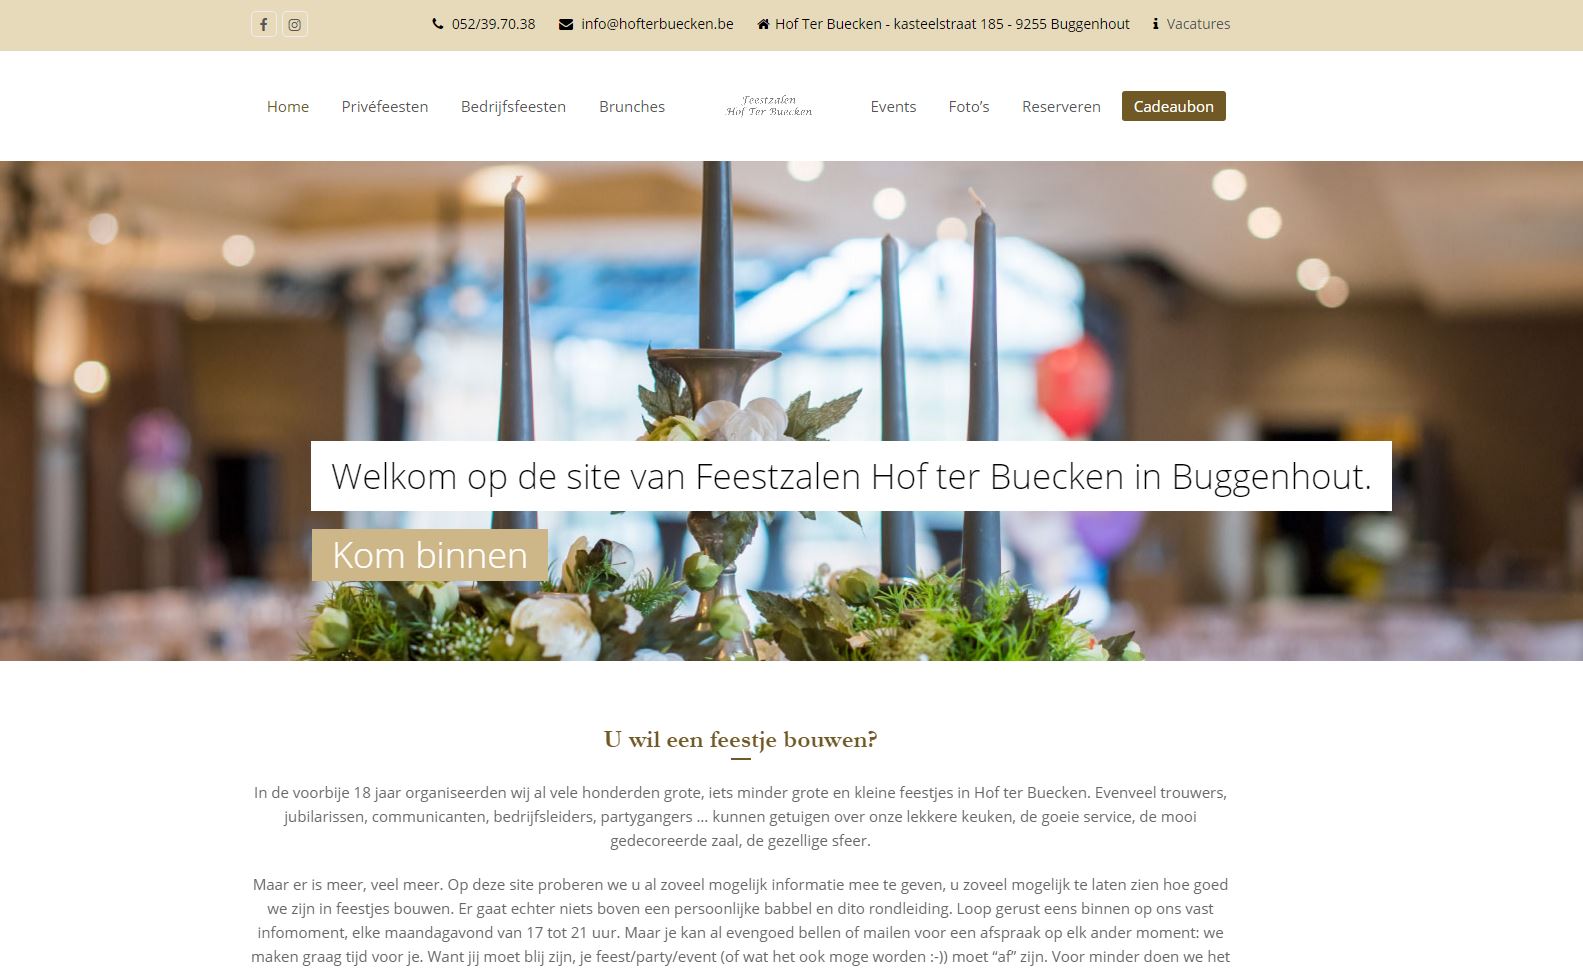 Hof ter Buecken feestzaal Buggenhout - nieuwe website